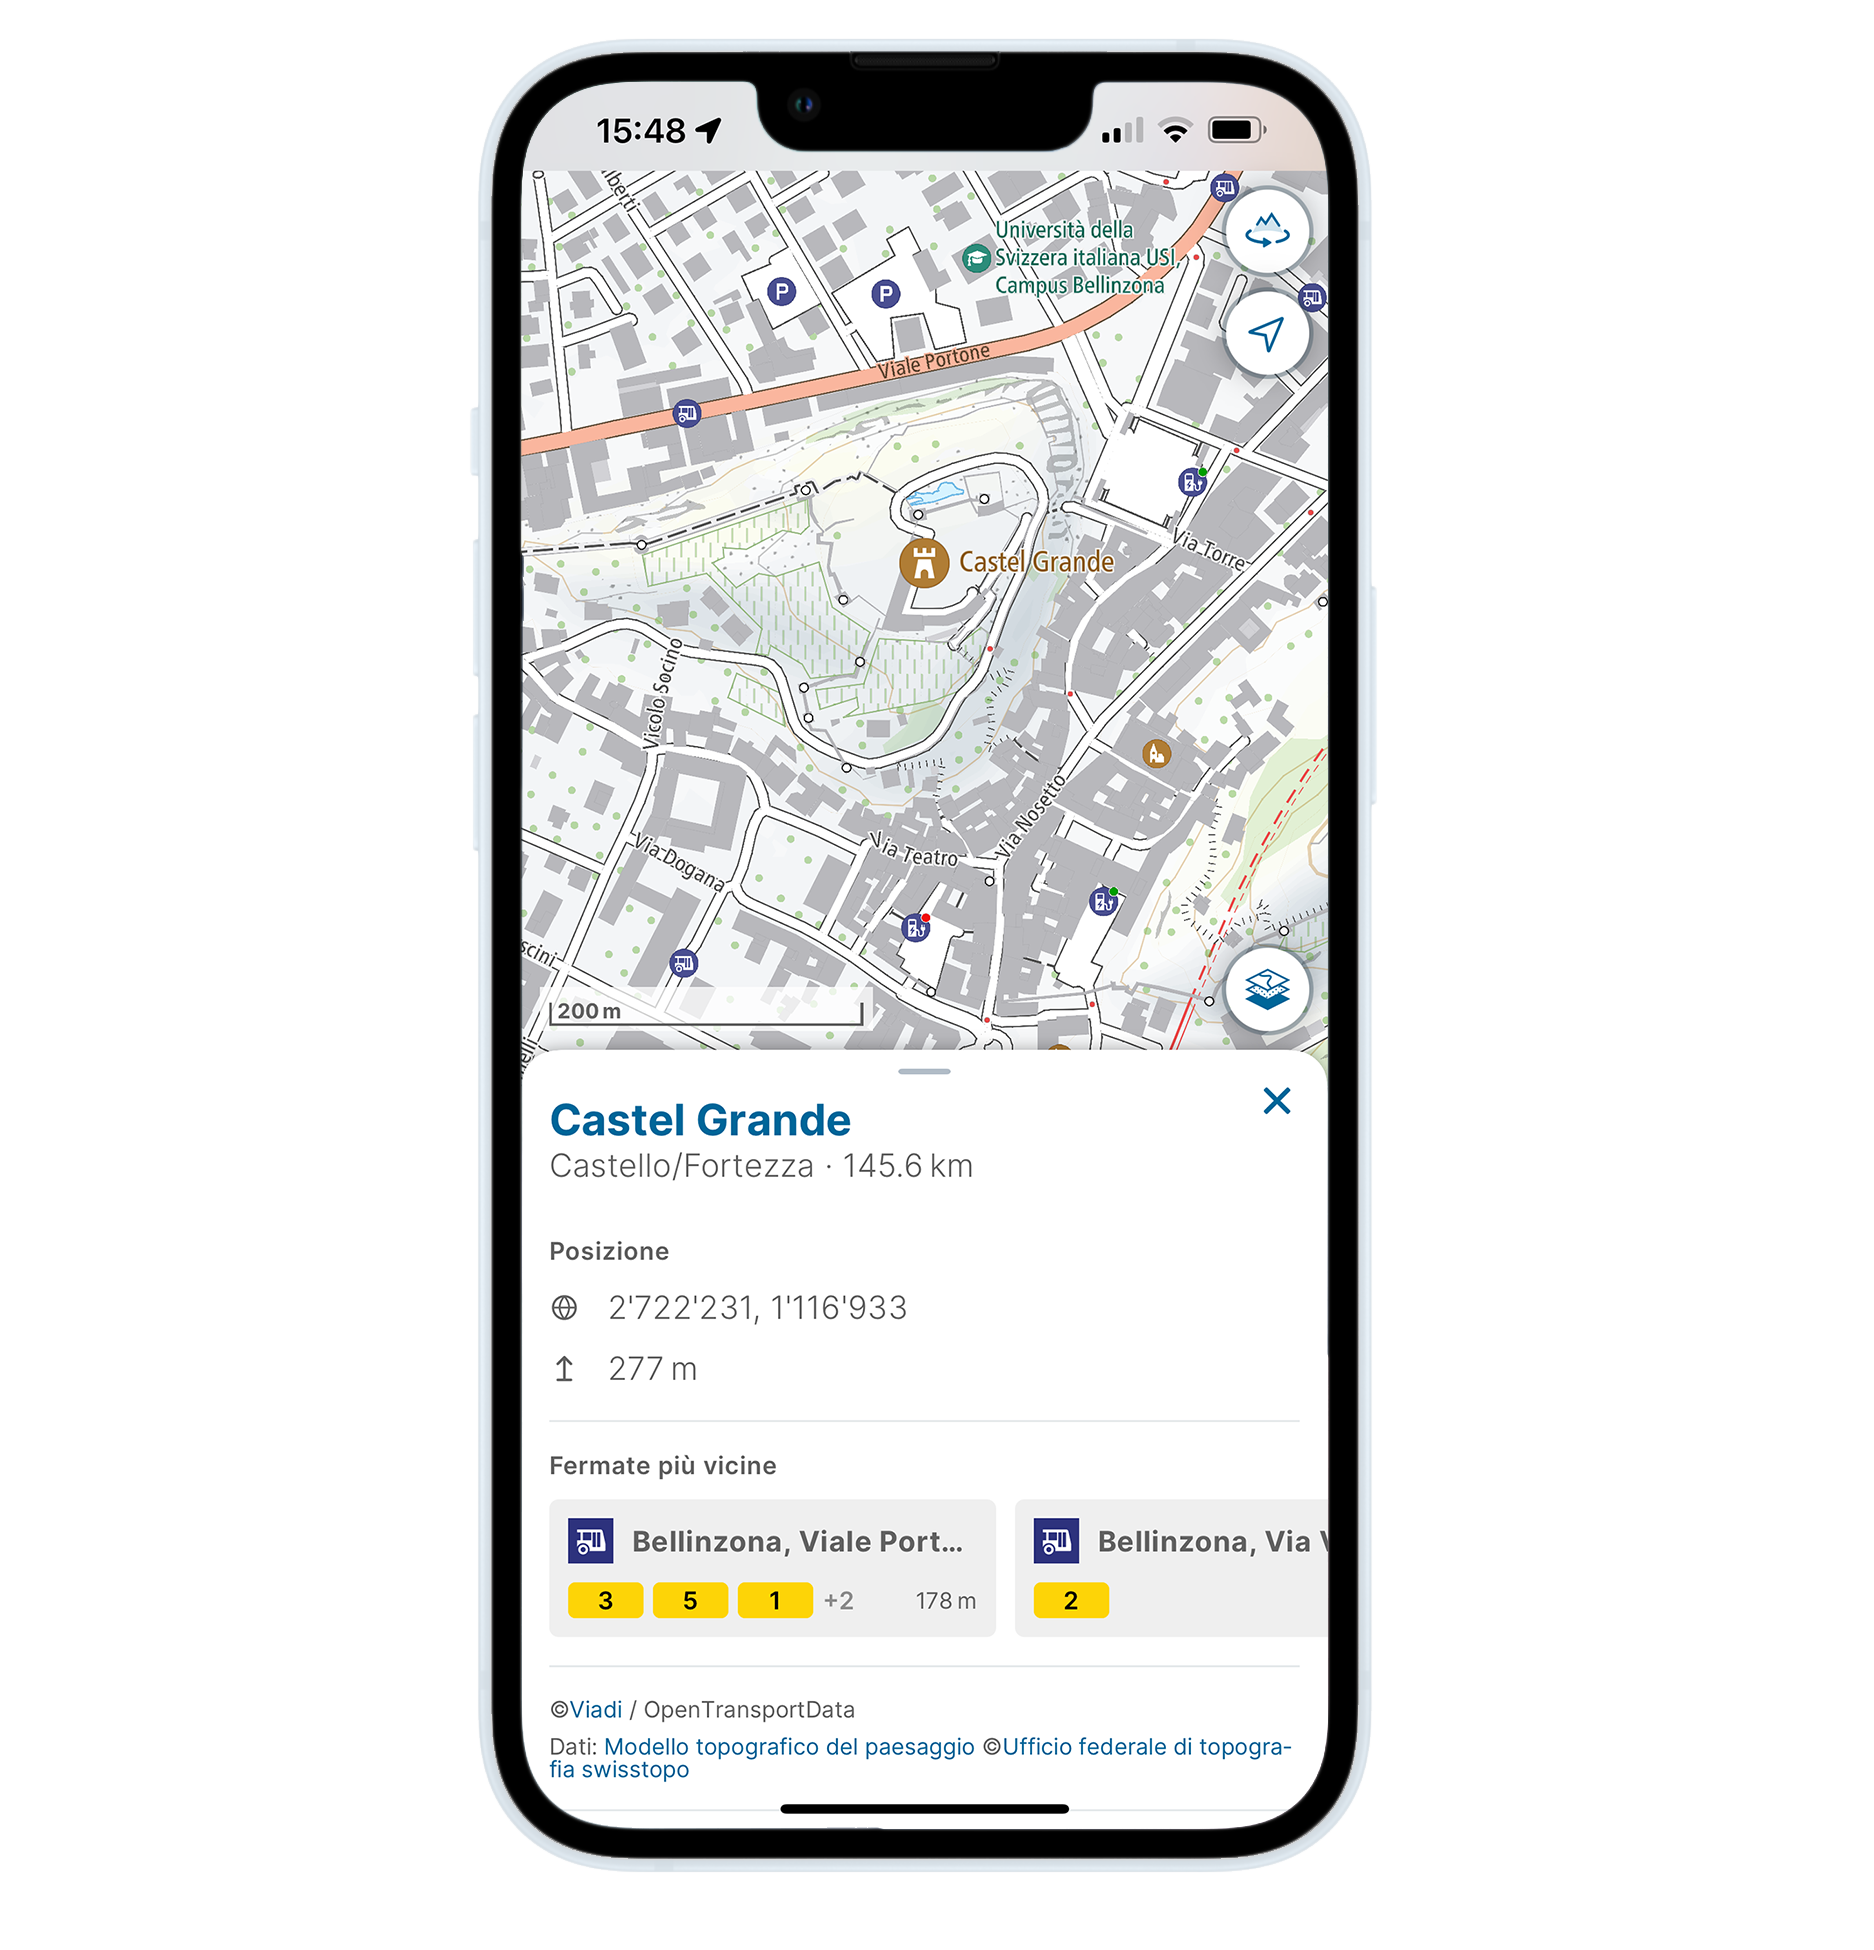 Изображение приложения Swisstopo, которое интегрирует в свои карты дополнительную информацию, например о ближайшем транспортном средстве рядом с местом поиска.